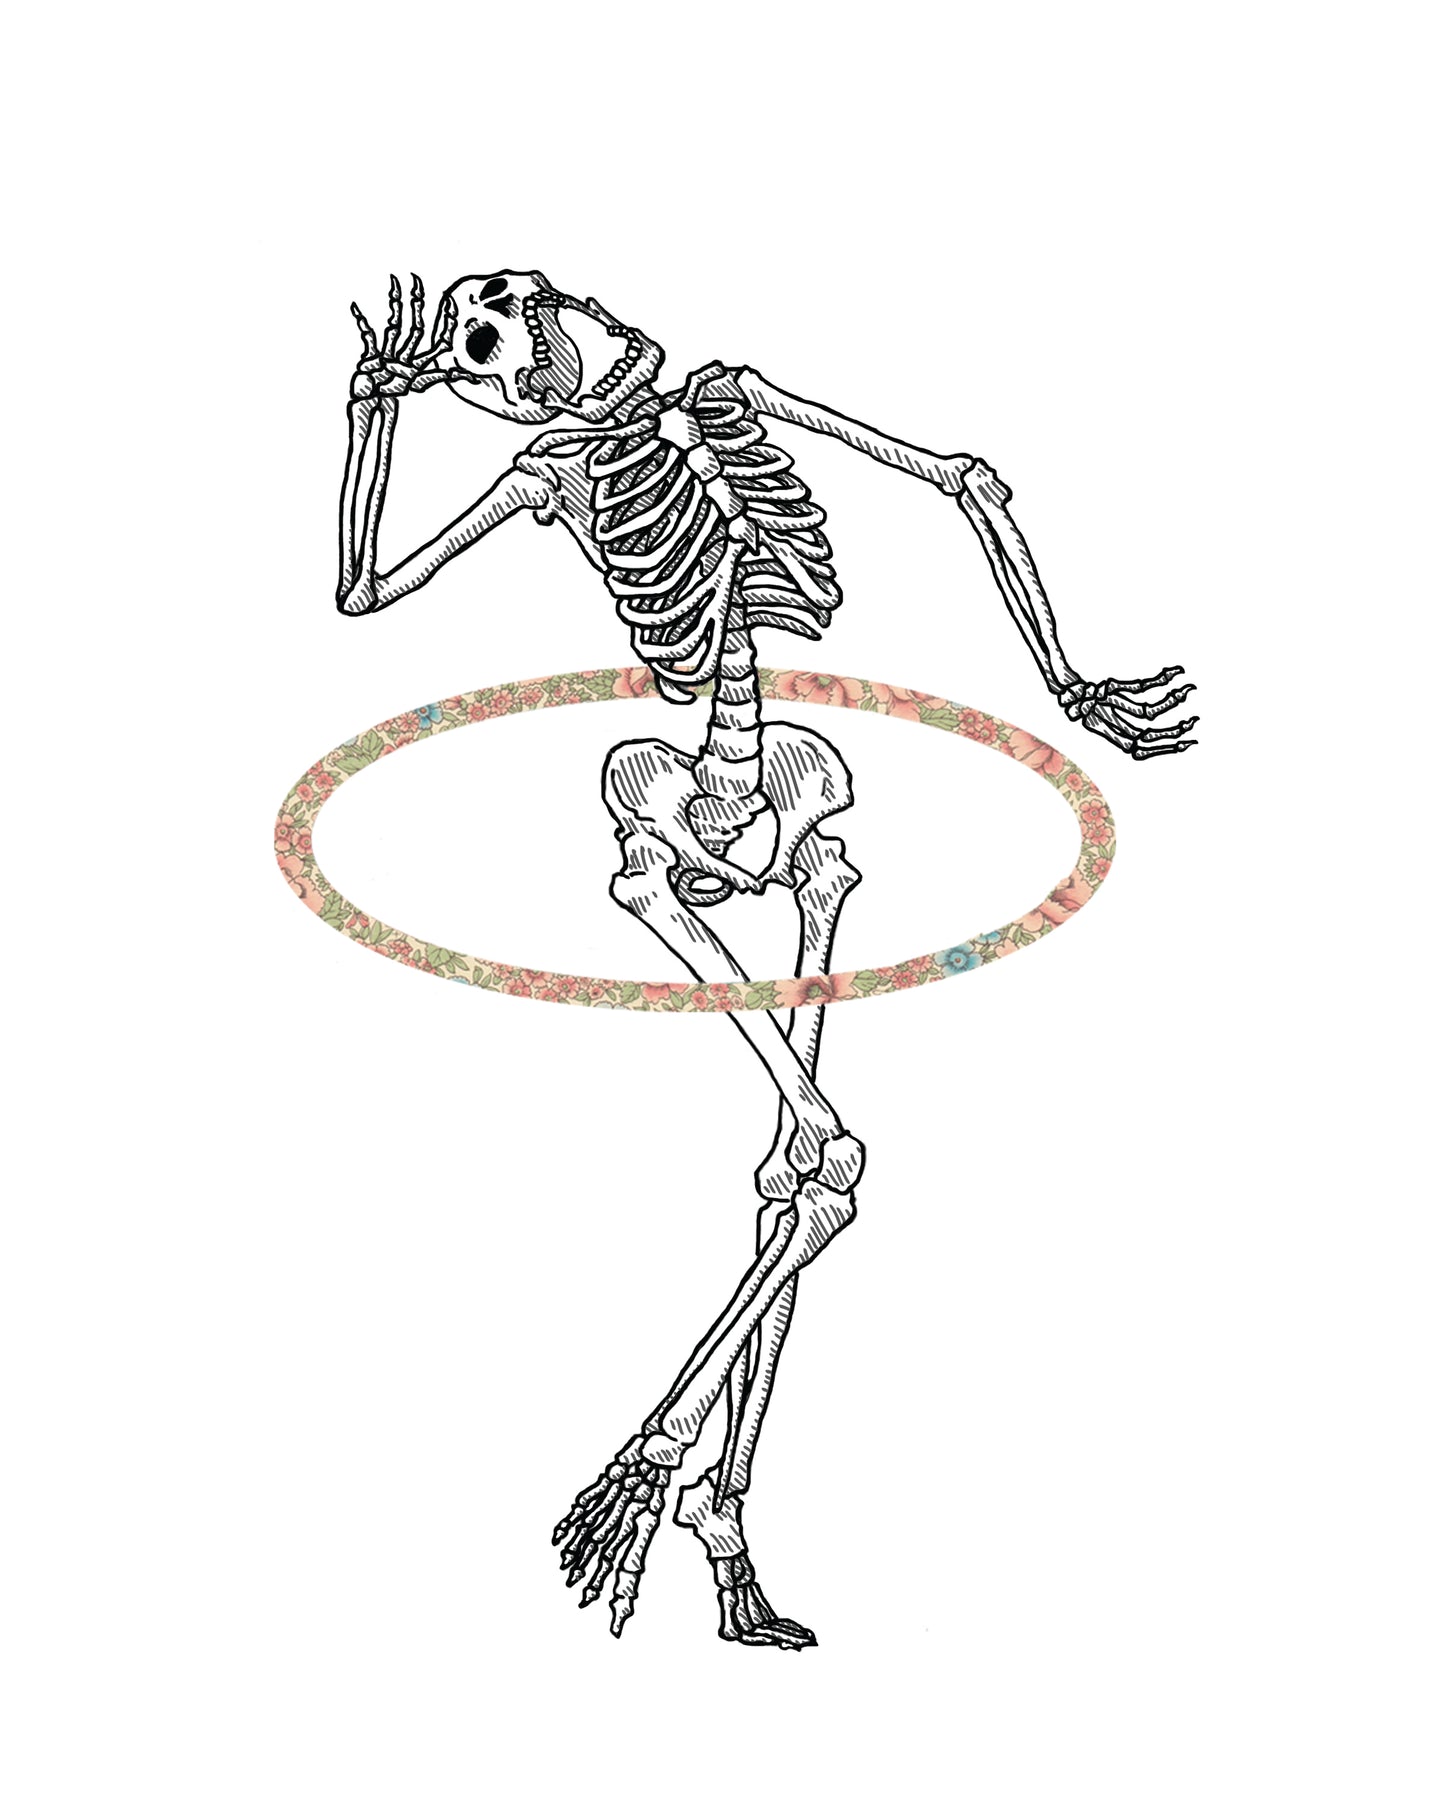 Hooping Skeleton Print